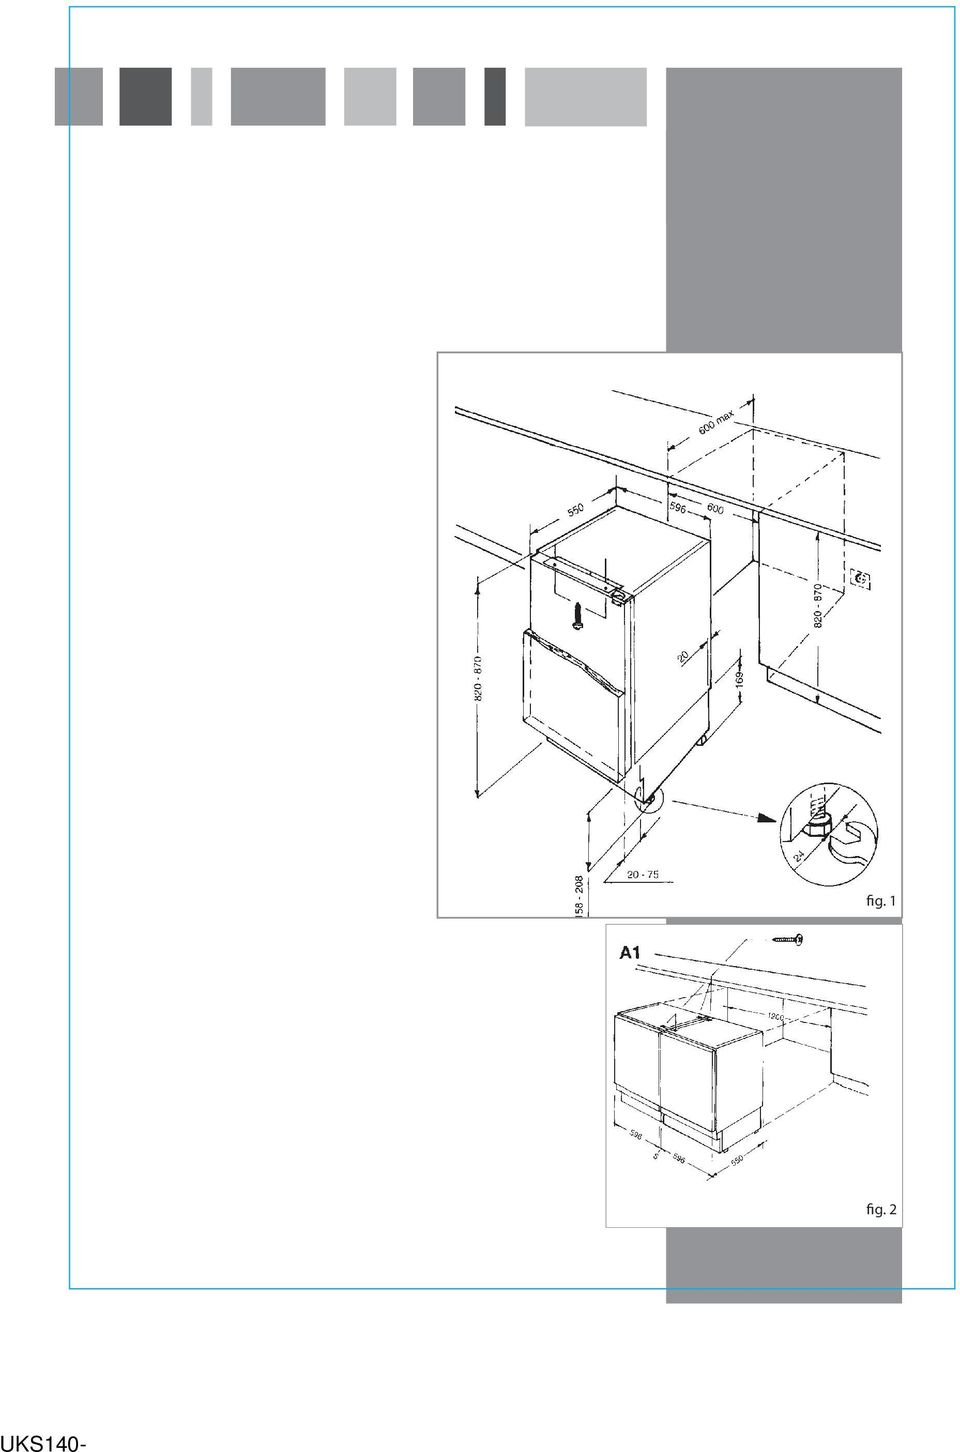 aangebracht, indien de keukenvloer na de installatie moet worden betegeld of als de inbouwhoogte van het apparaat meer dan 850 mm is. Fig.